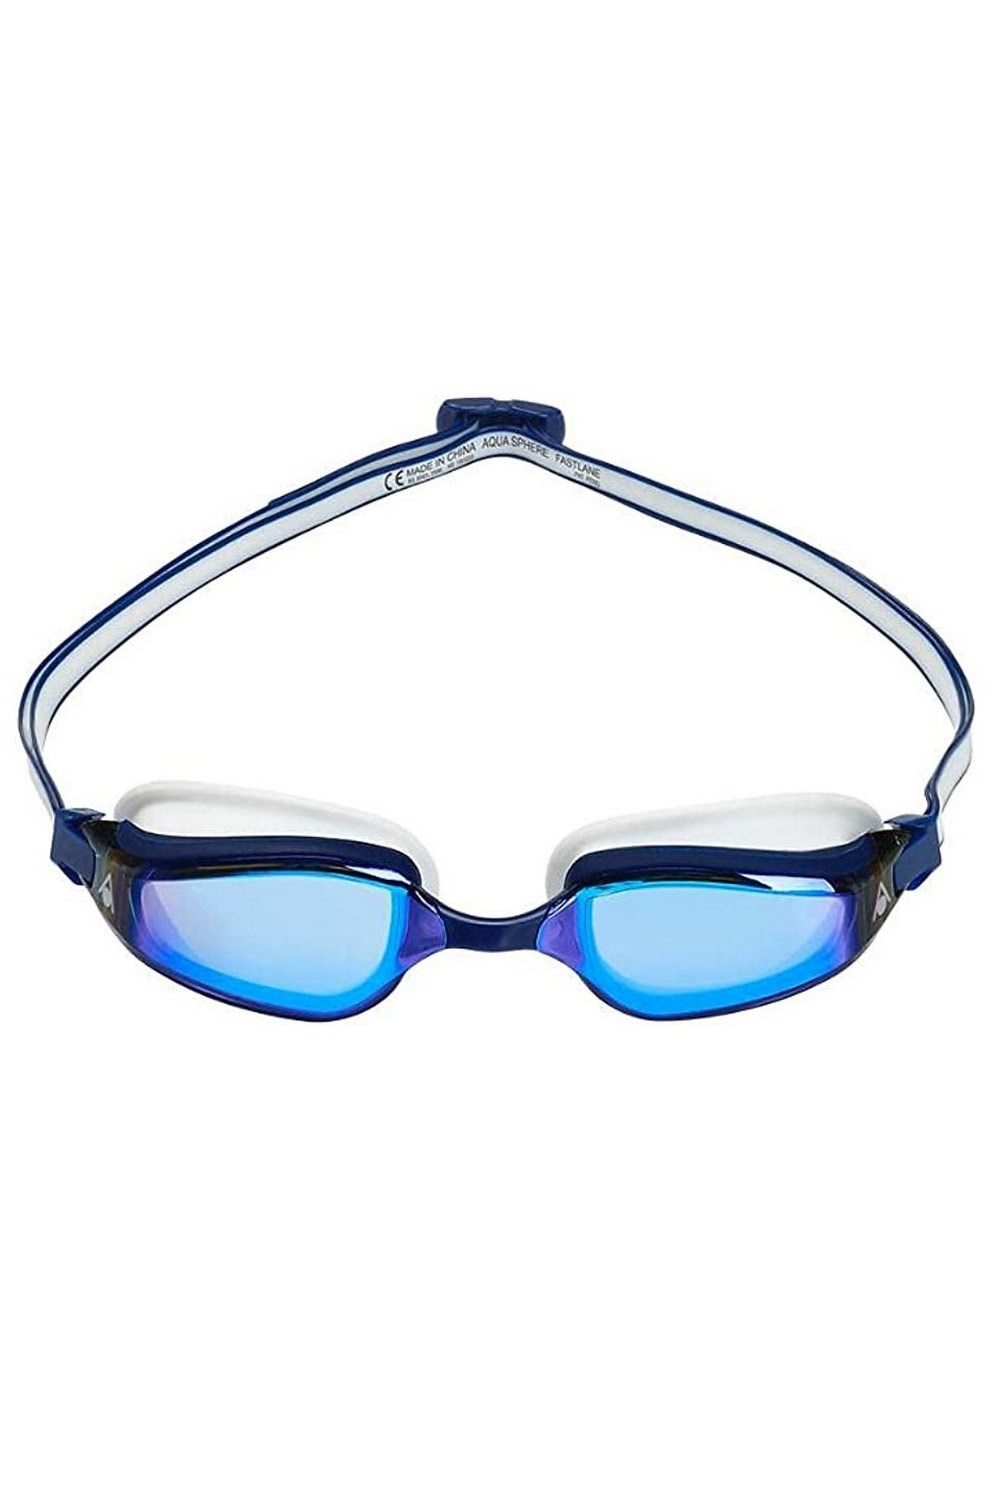 Fastlane Swimming Goggles -